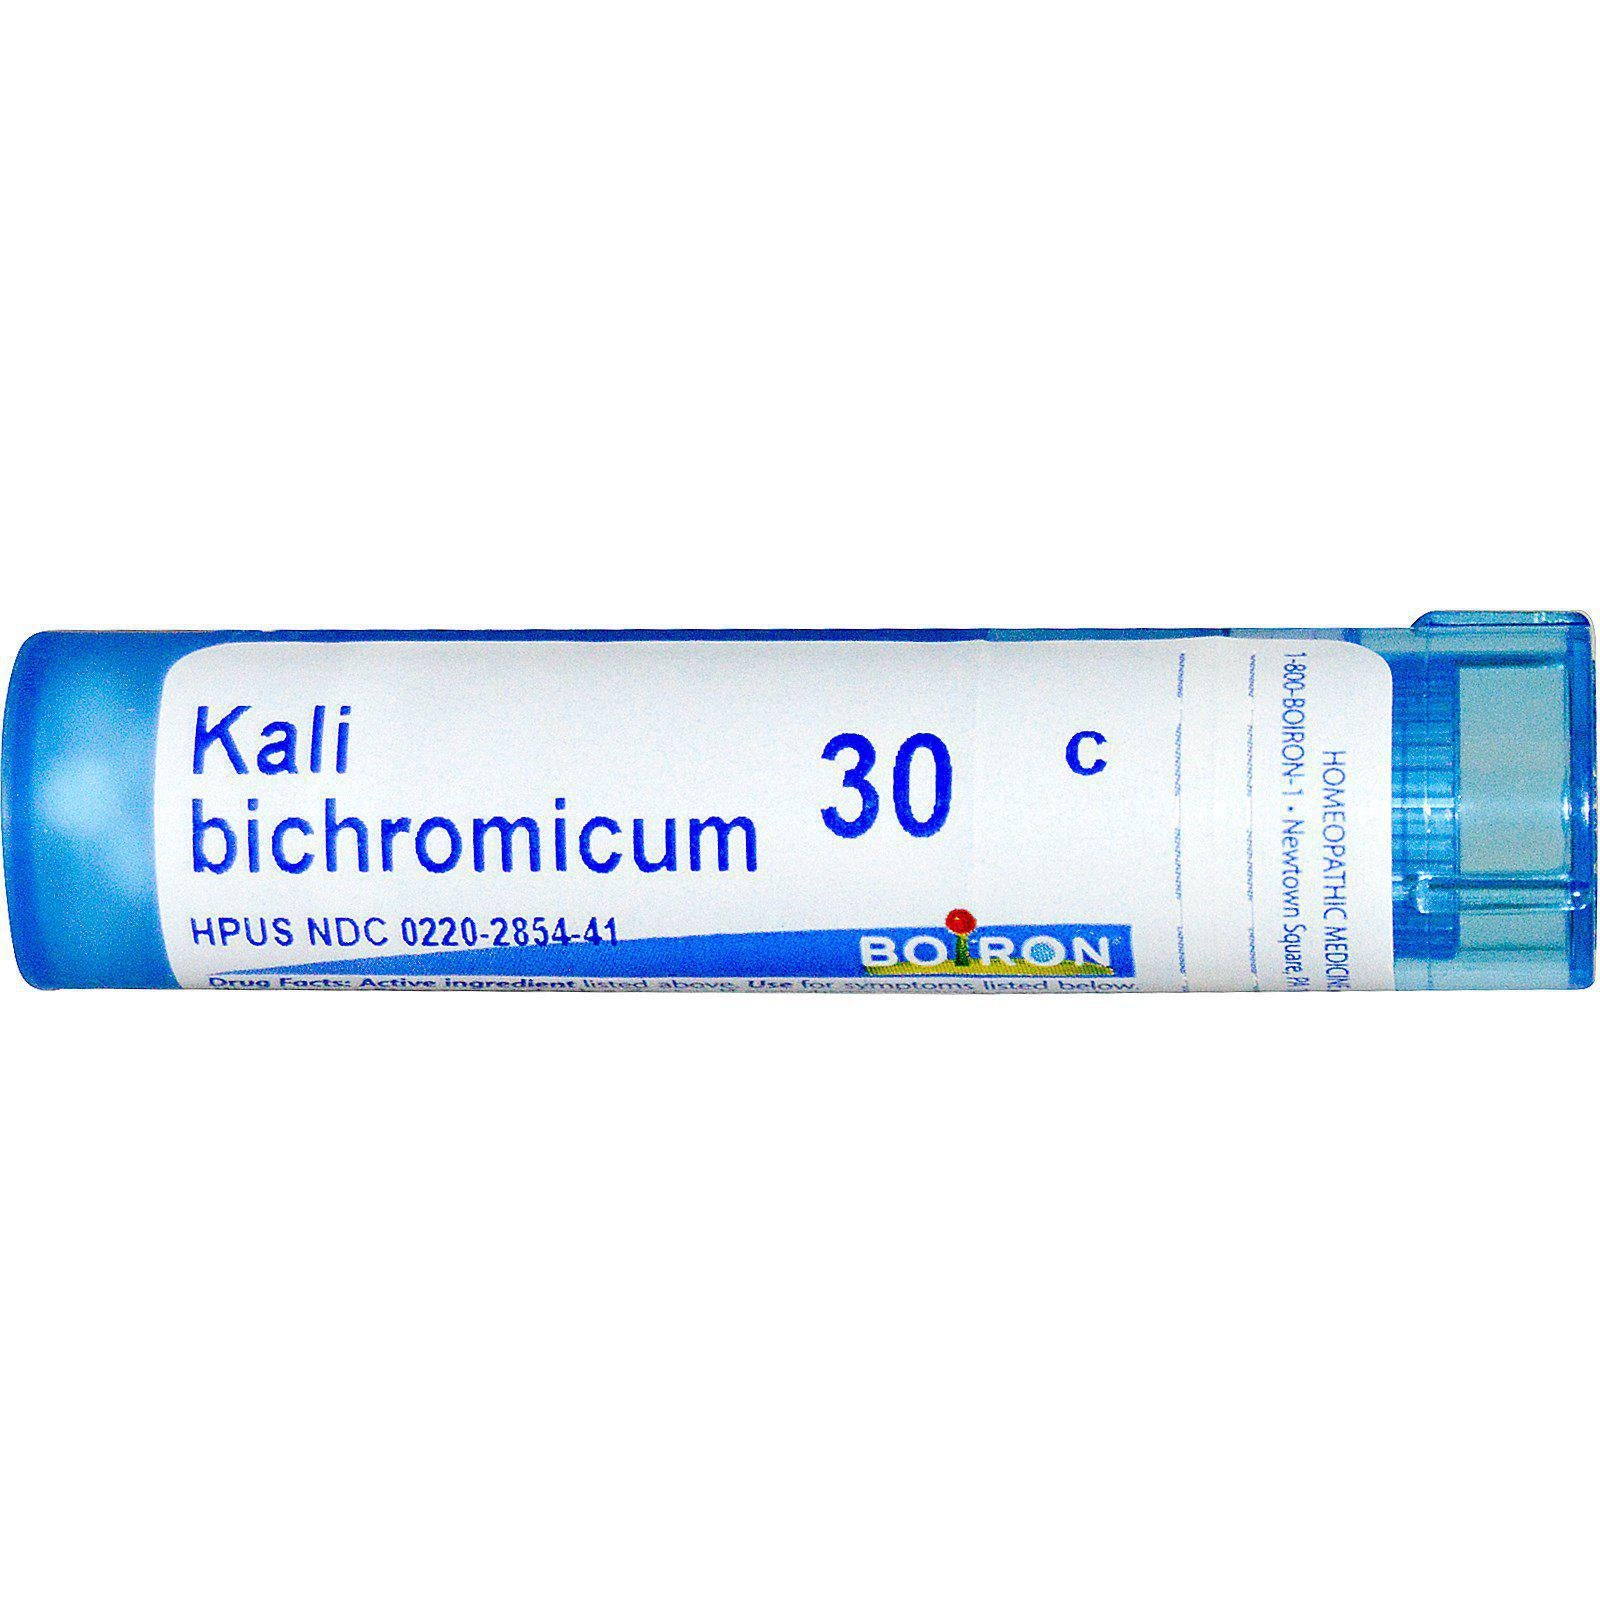 Kali Bichromicum 30C-80 ct